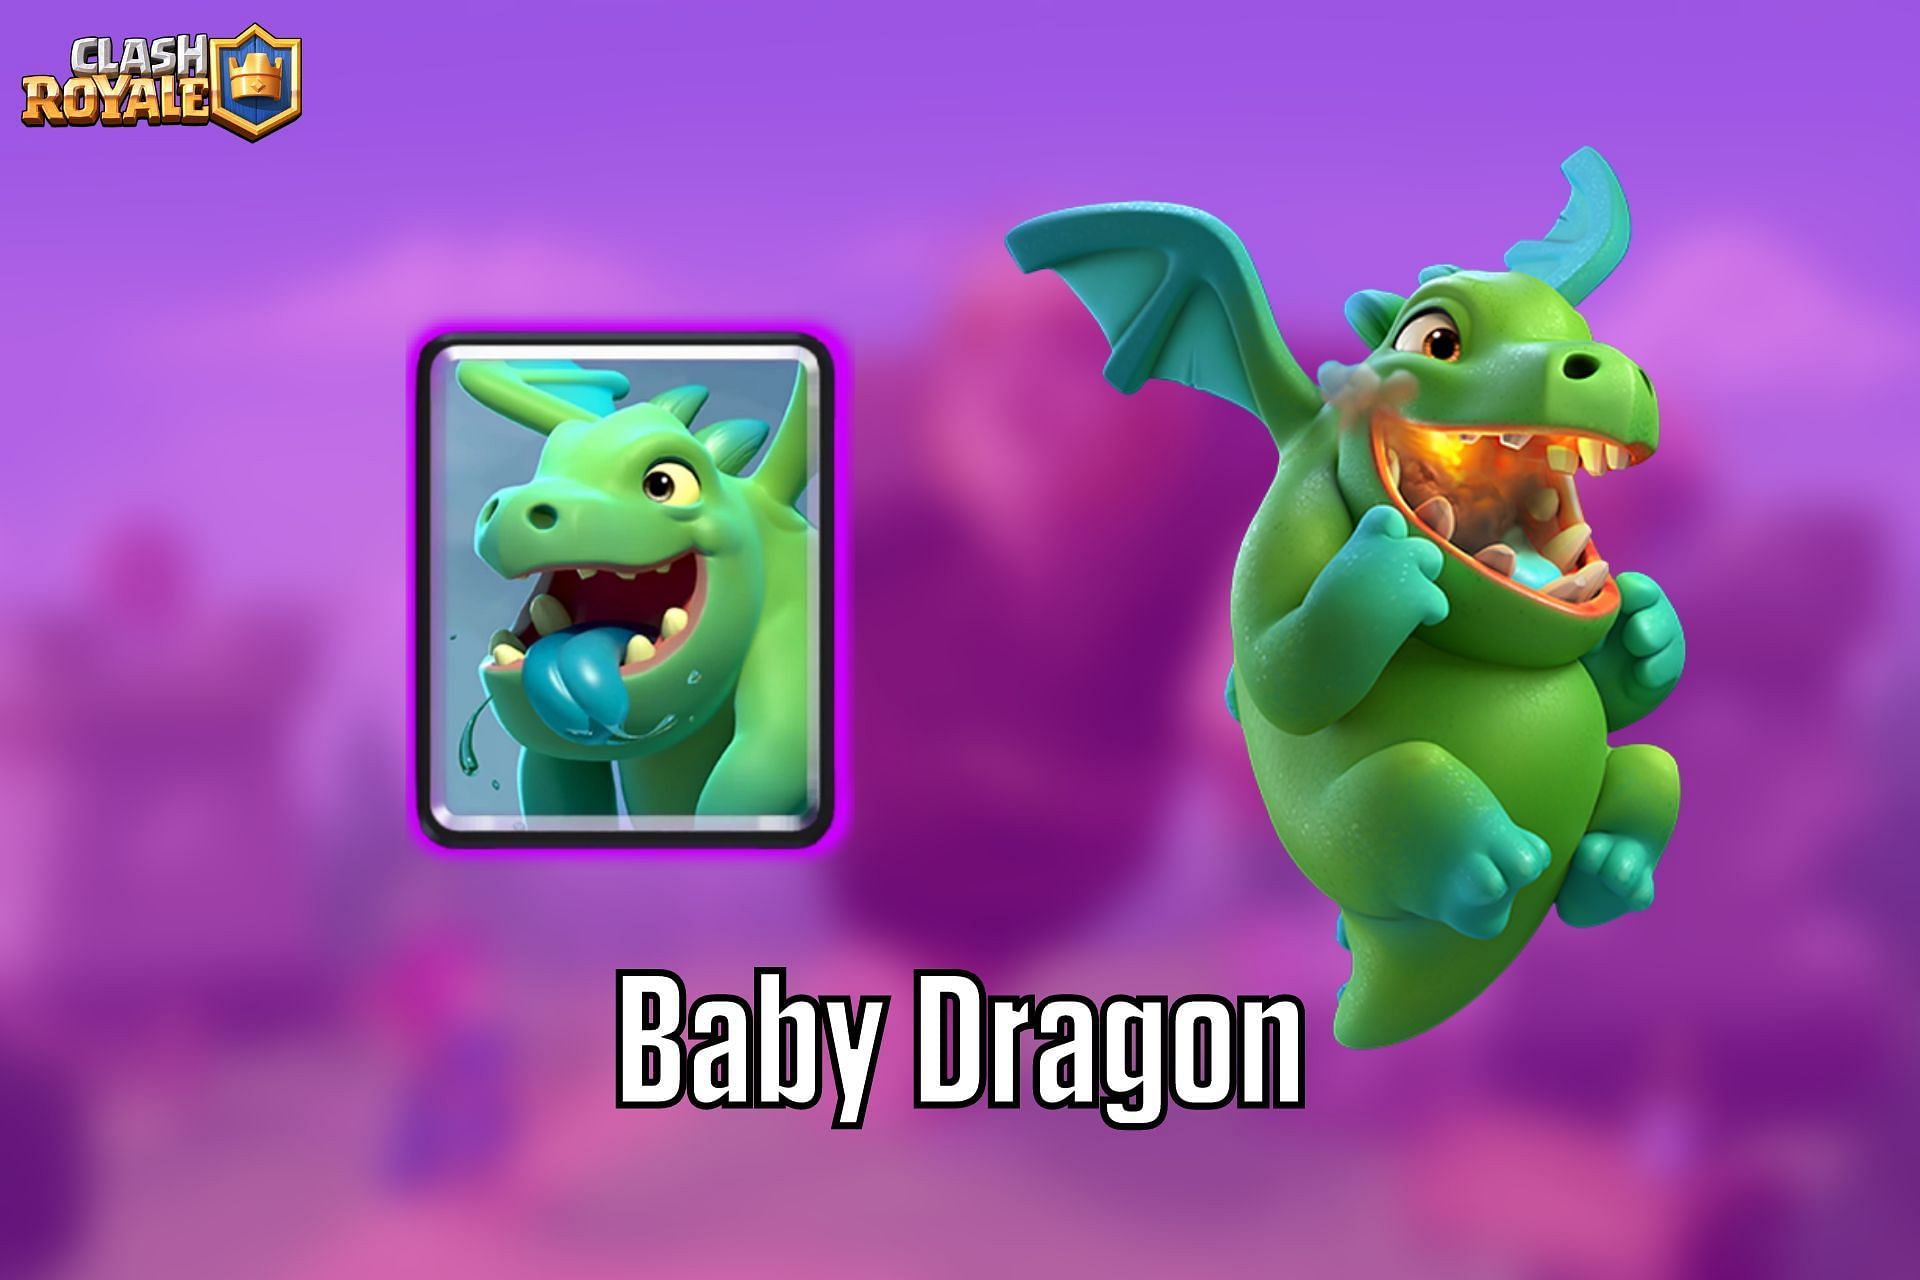 Unlock the Baby Dragon in Clash Royale (Image via Sportskeeda)